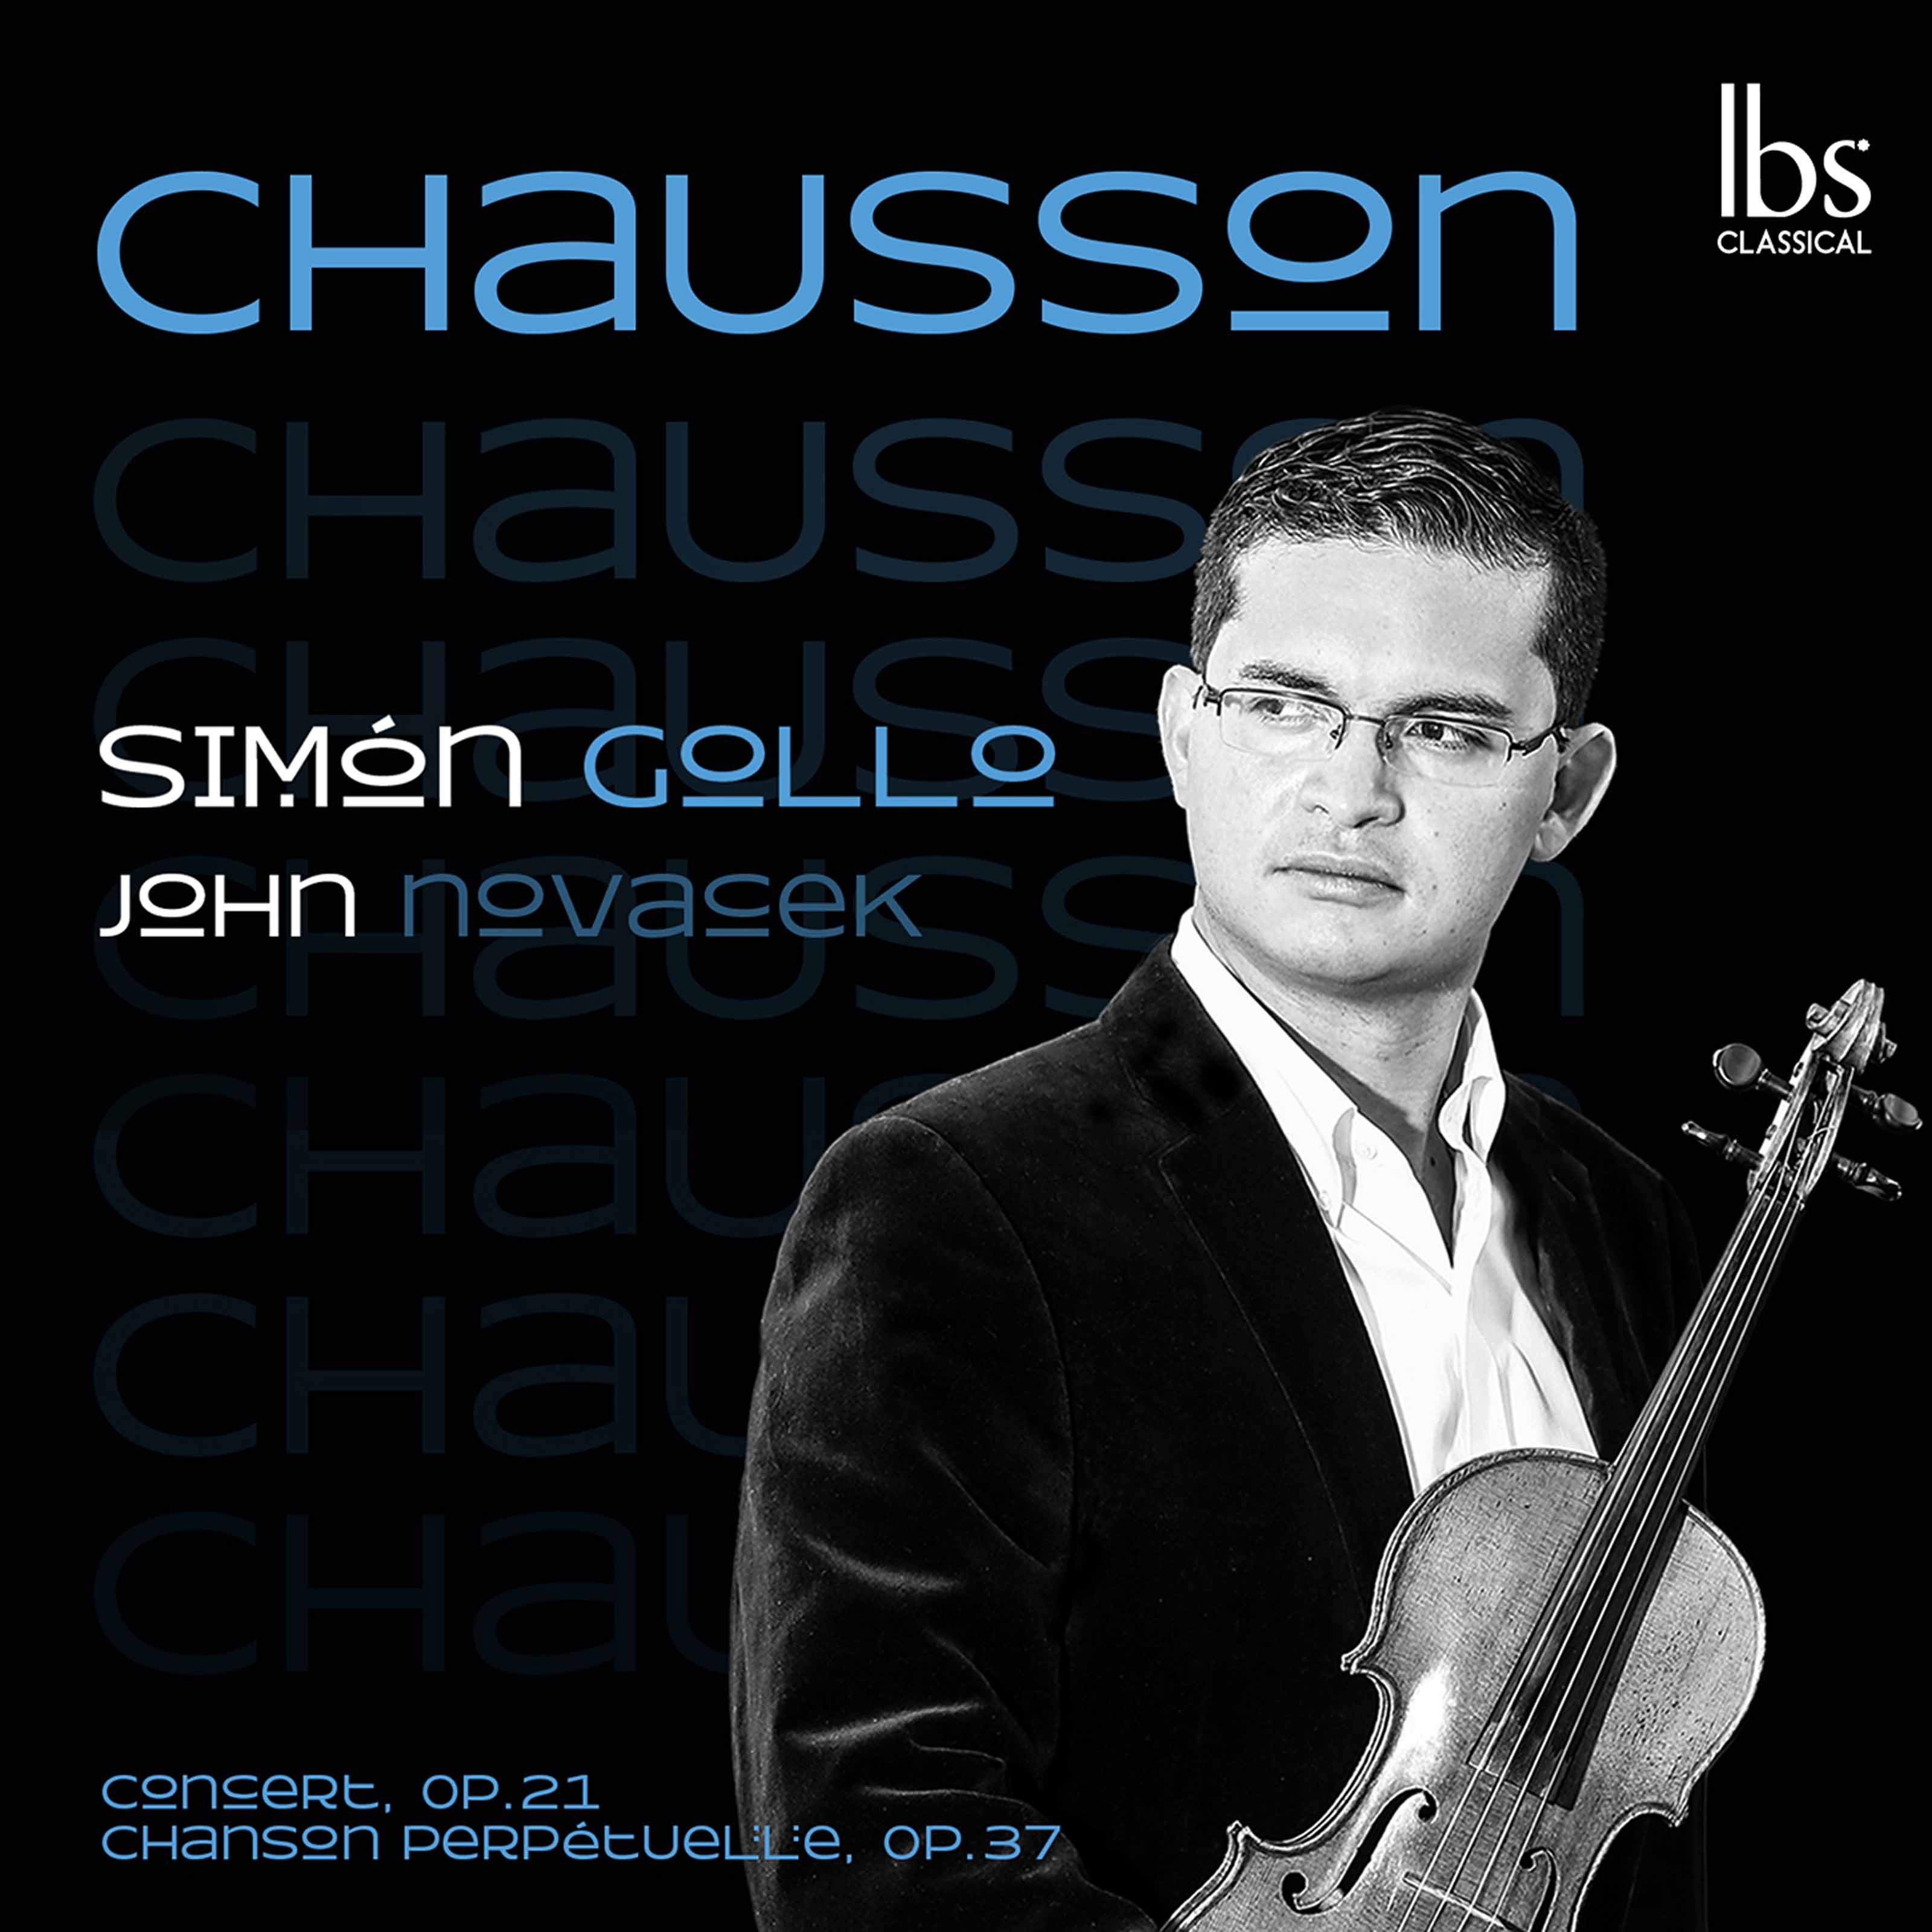 Simon Gollo - Chausson Concert in D Major & Chanson perpetuelle (2020) [FLAC 24bit/96kHz]